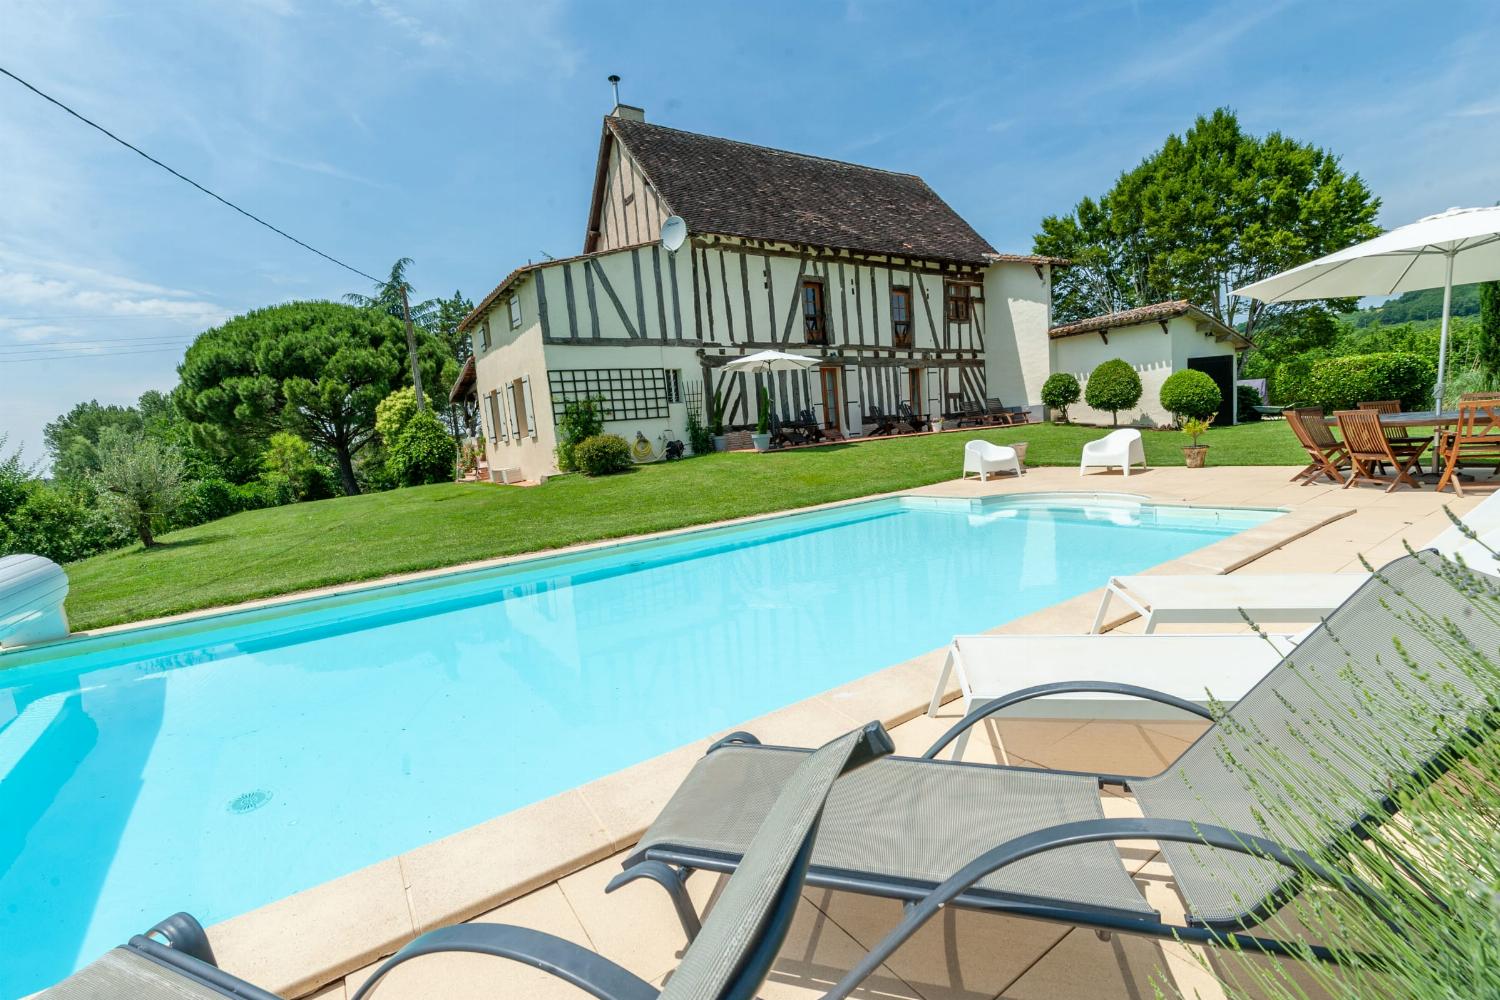 Location maison dans le Lot-et-Garonne avec piscine privée chauffée